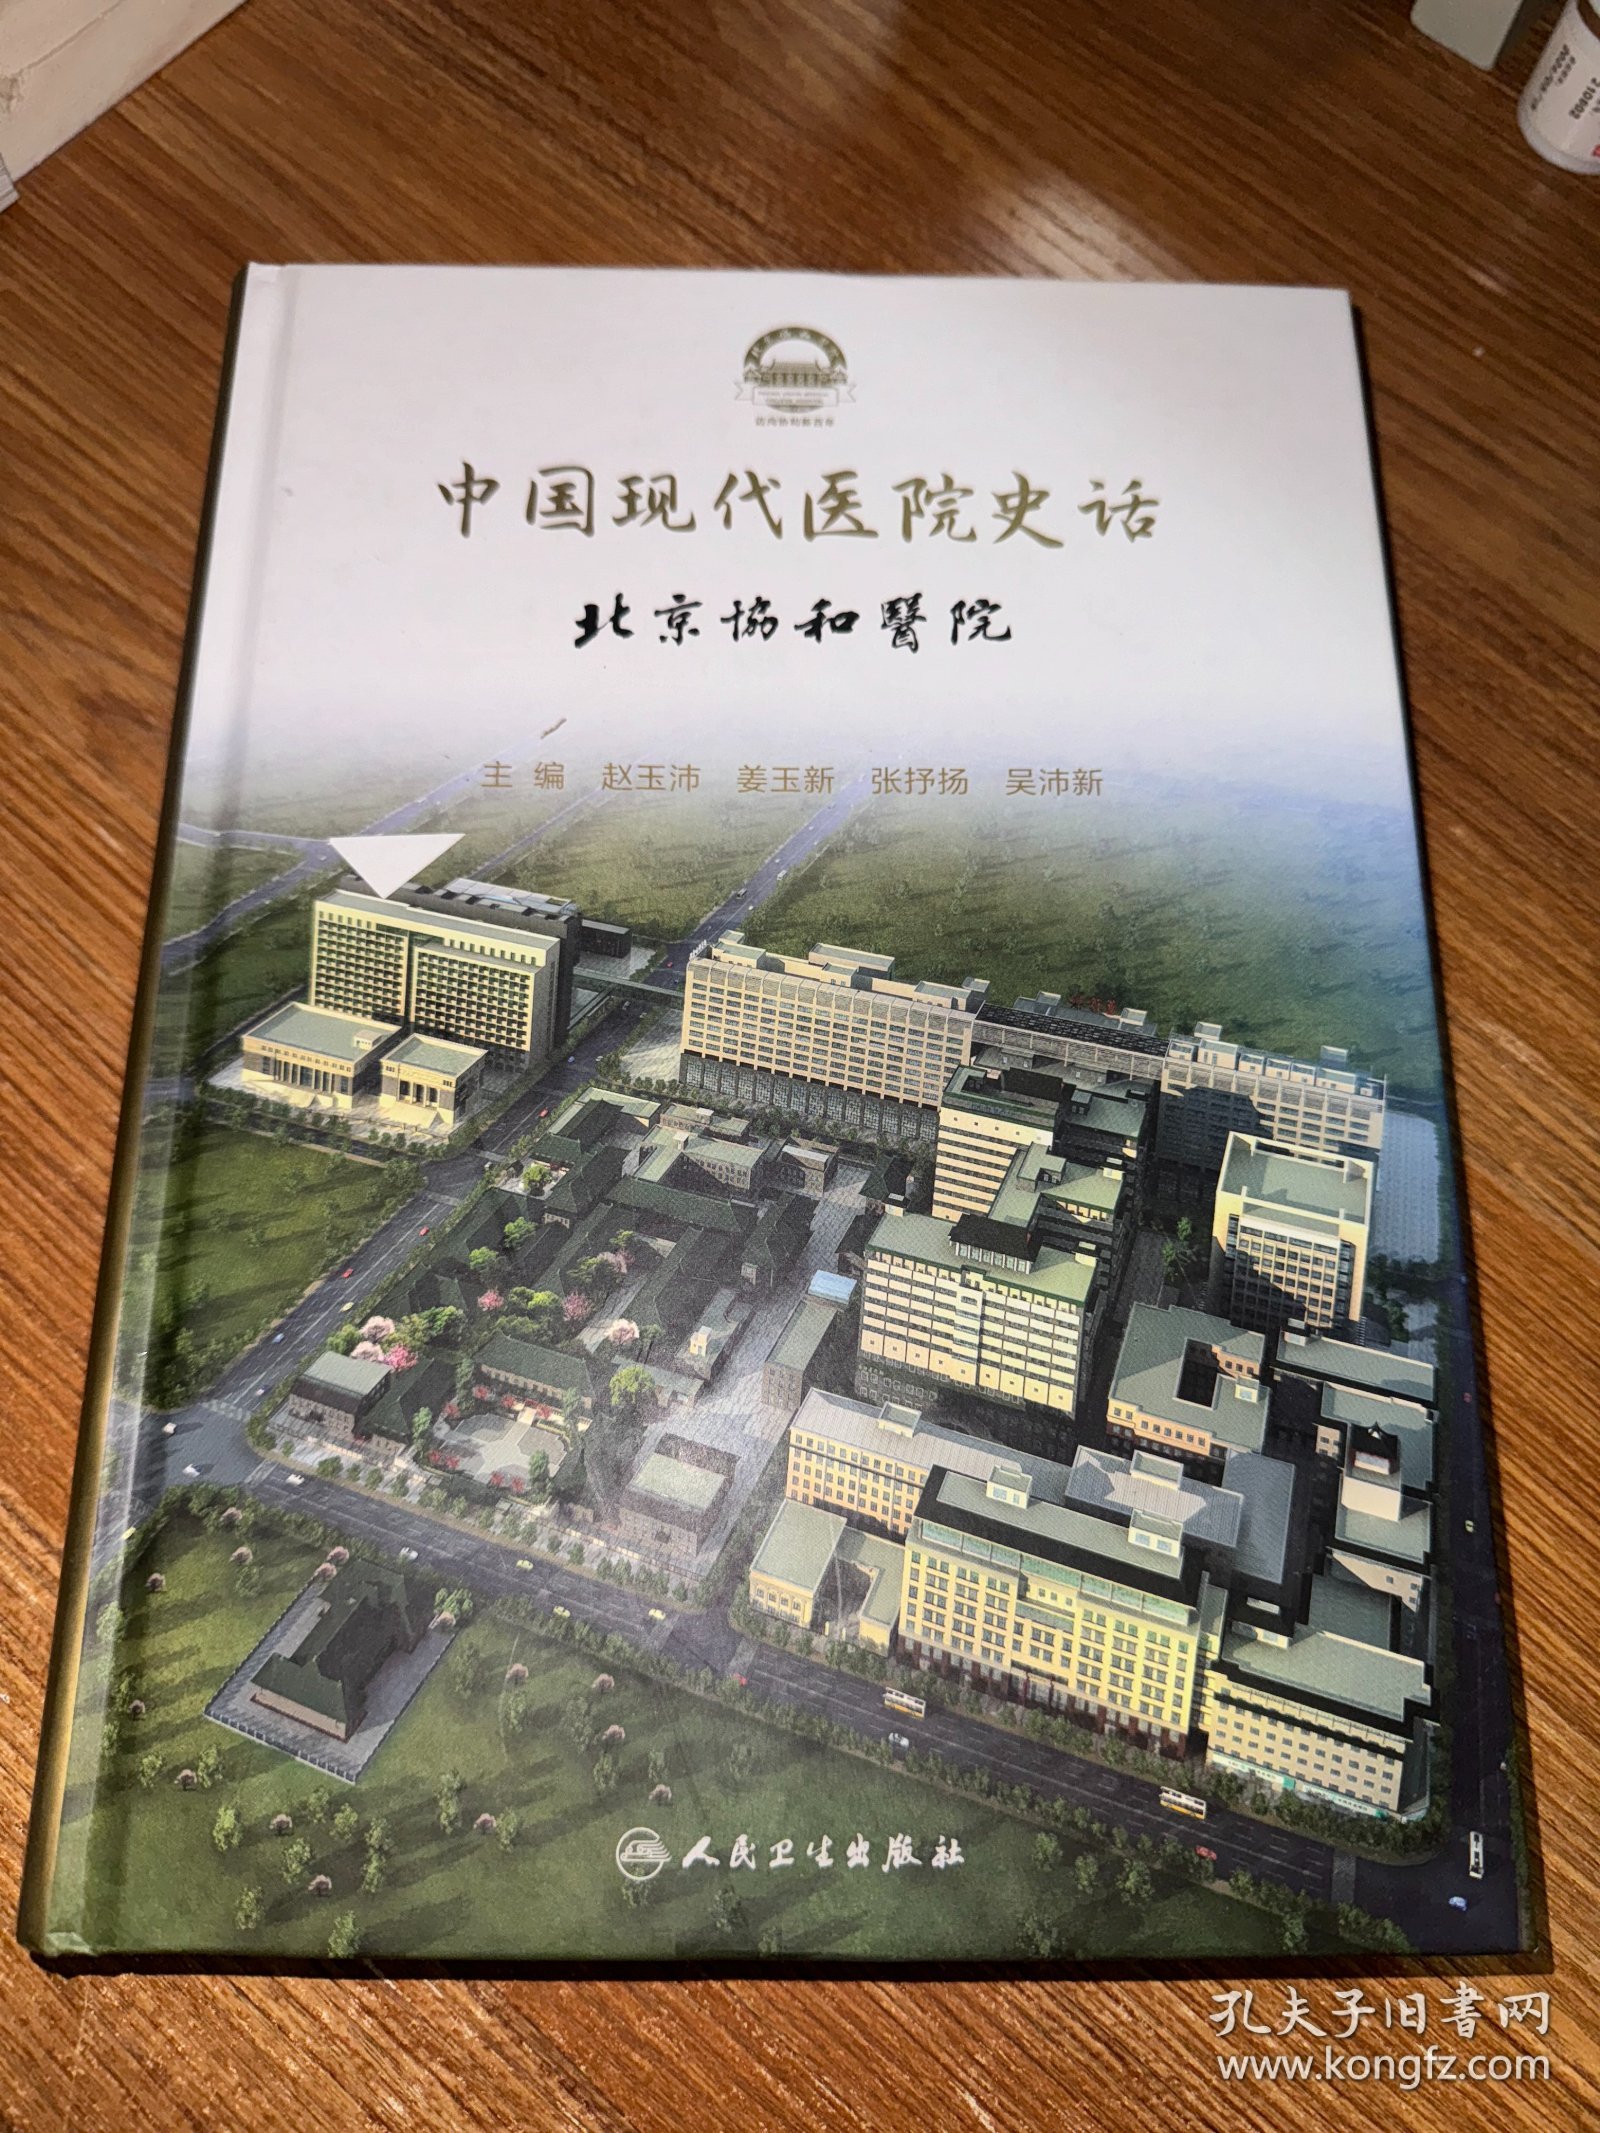 中国现代医院史话·北京协和医院